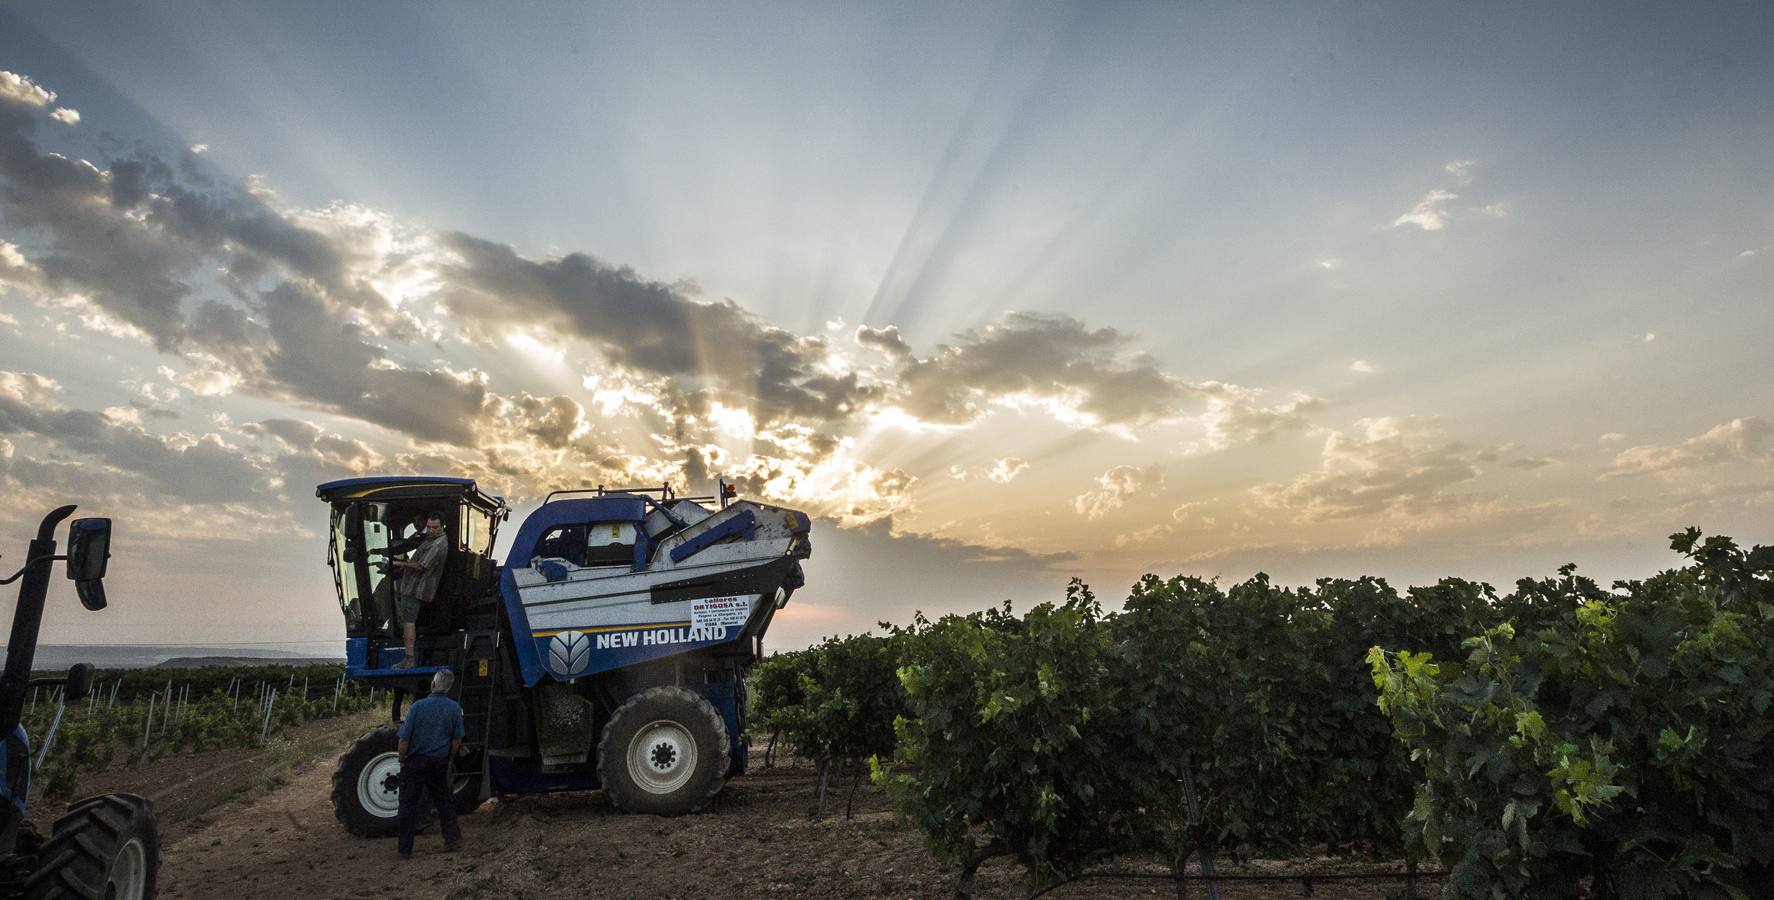 El Consejo cree que la cosecha «cumplirá expectativas» de producción y empieza a exigir descargas en las viñas más productivas | La Rioja Alta fue la zona más castigada por la helada en el 2017 y ha sido la más afectada por el mildiu este año